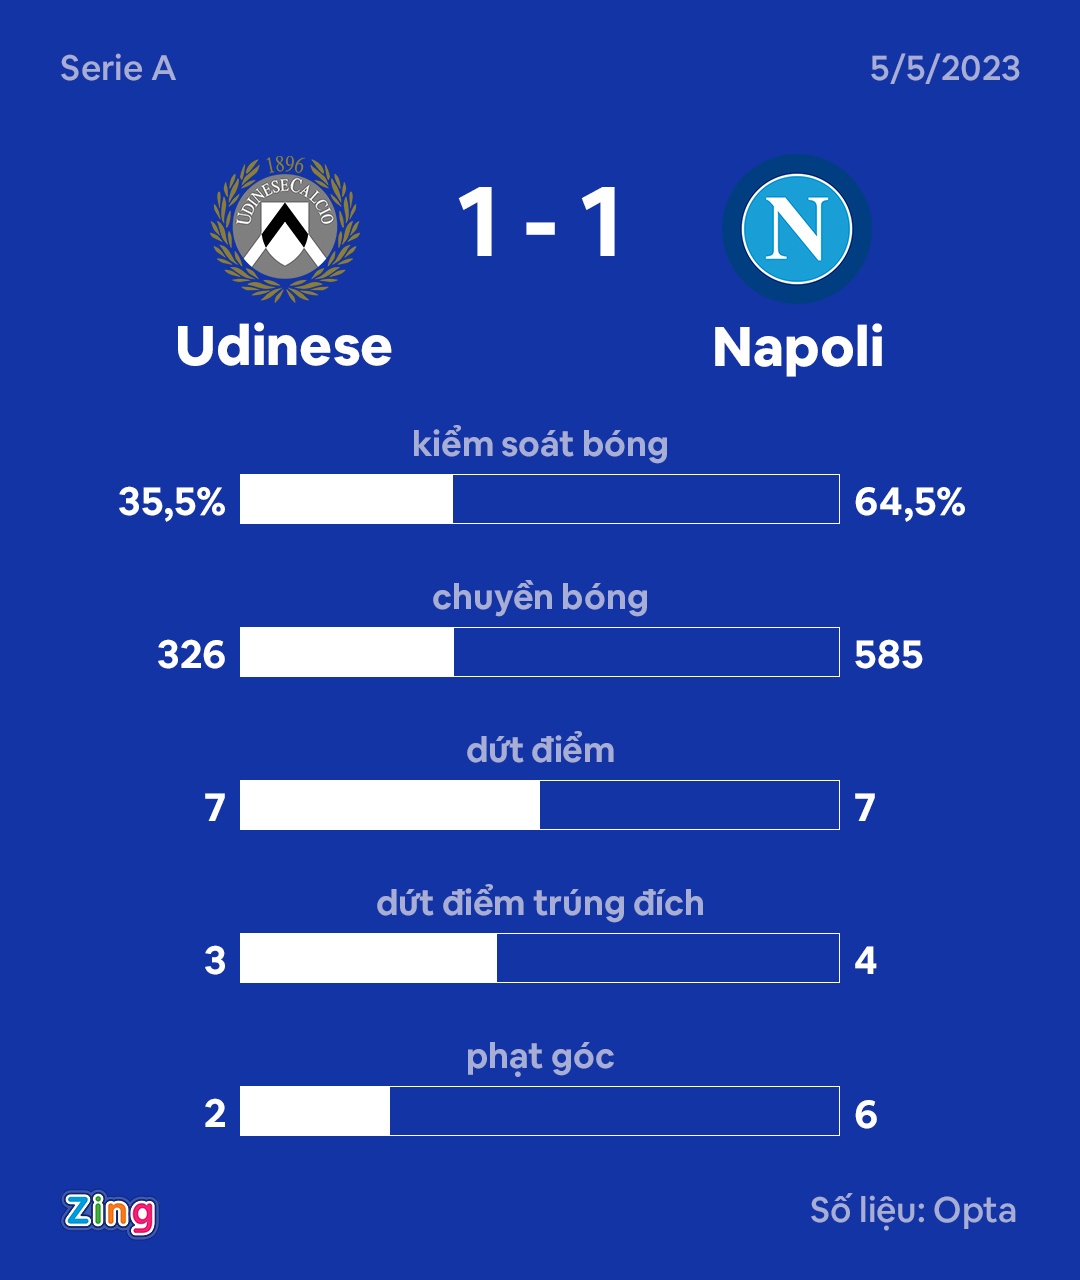 Napoli vô địch Serie A sau 33 năm chờ đợi - Ảnh 4.